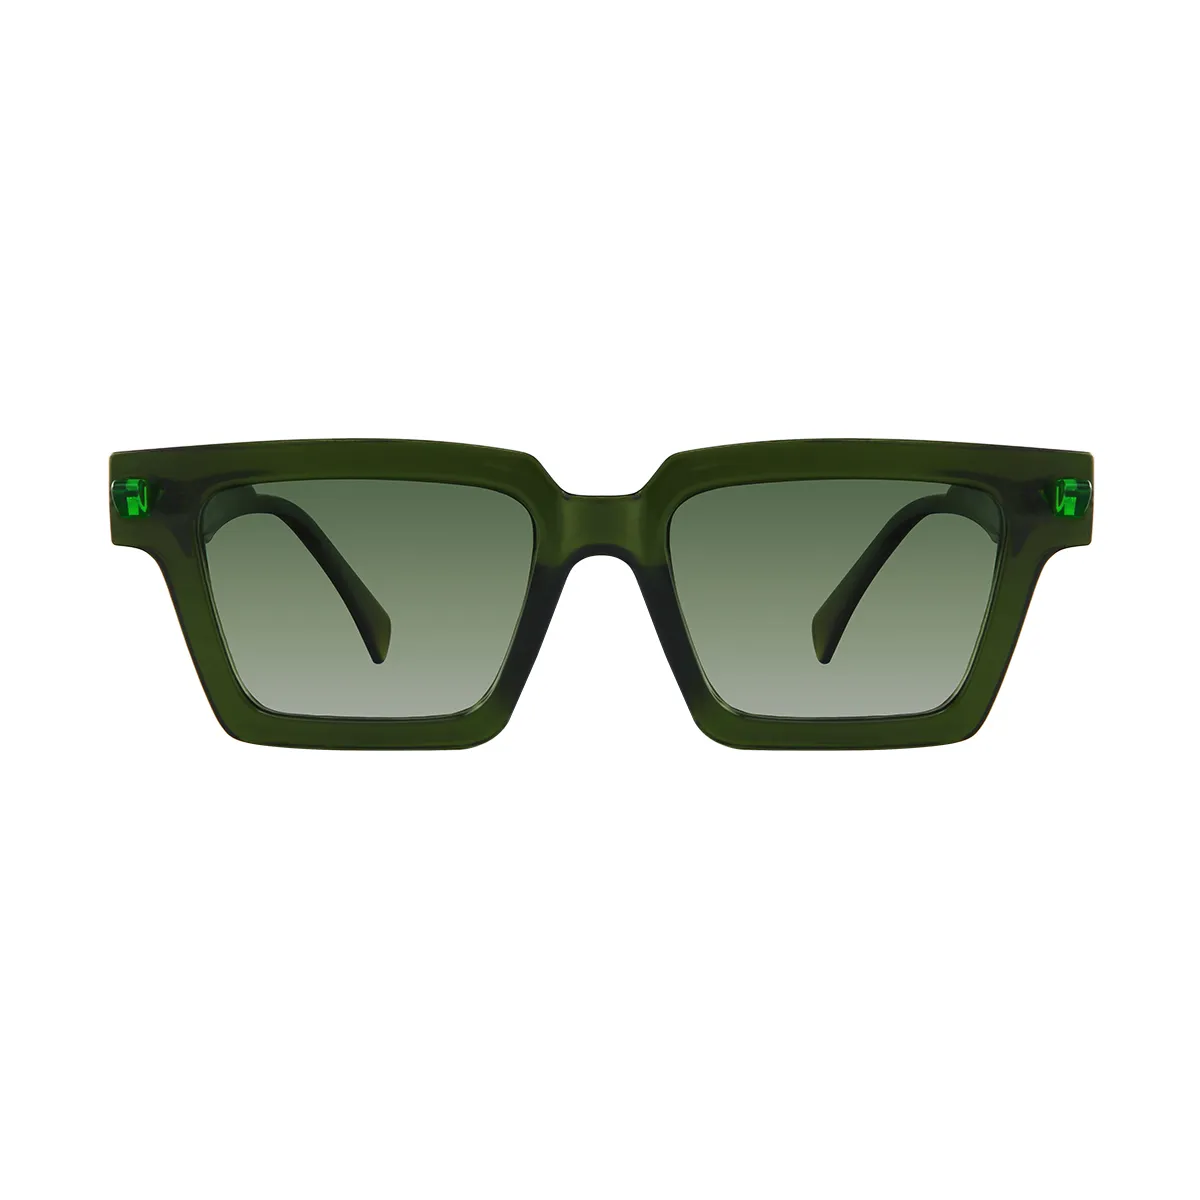 Sage - glasses Green Sunglasses for Men & Women